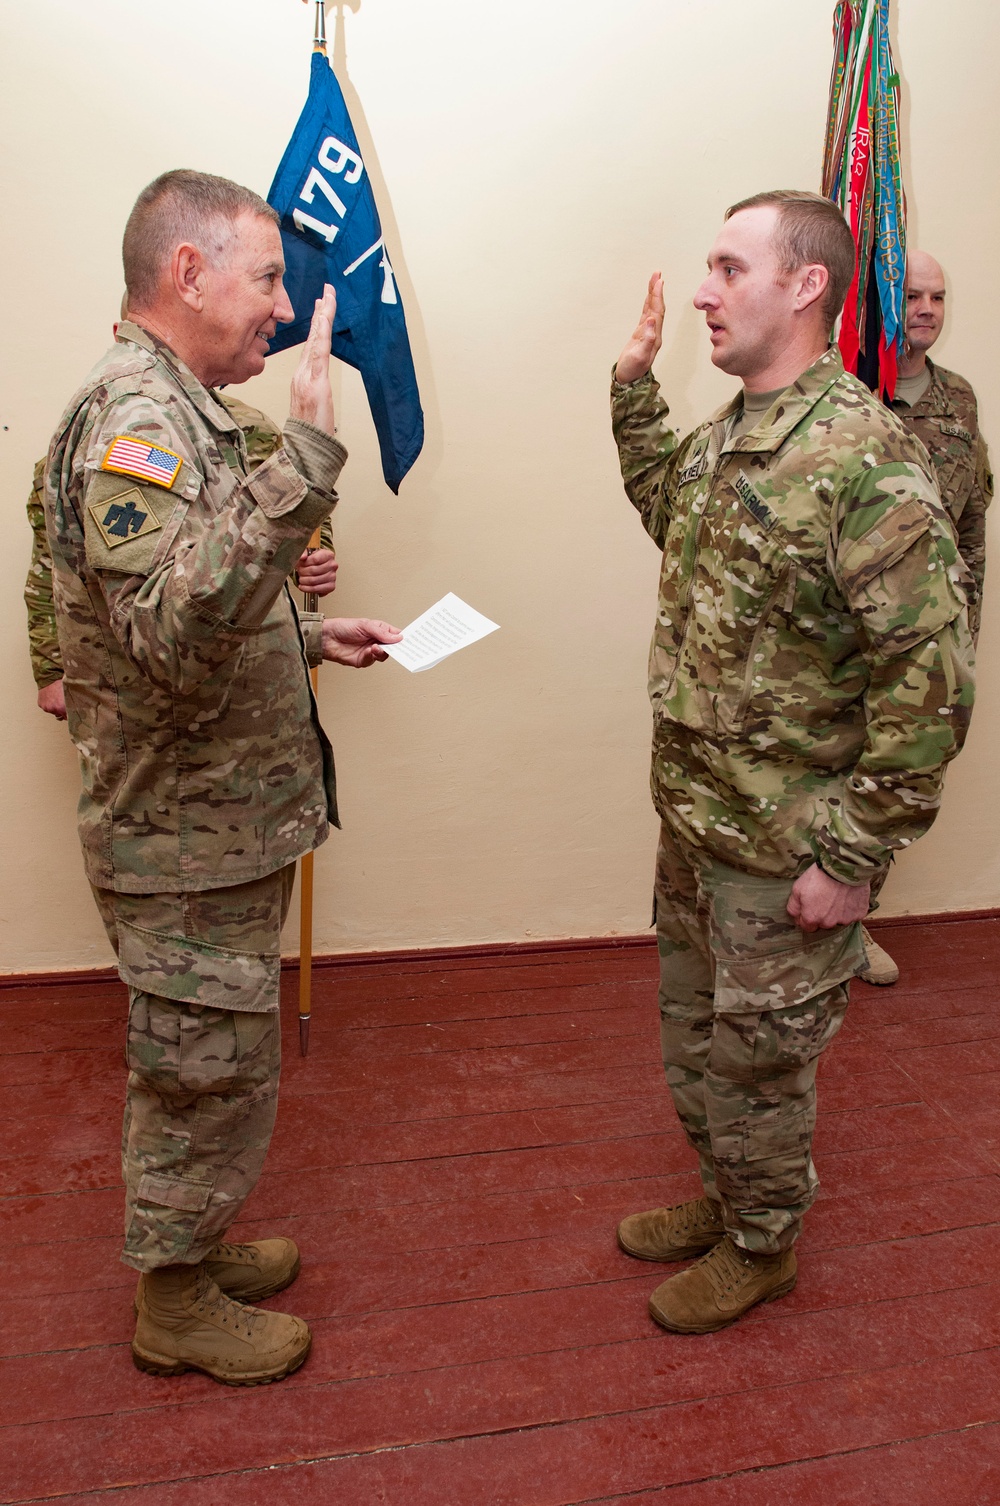 Maj. Gen. Asher visits JMTG-U